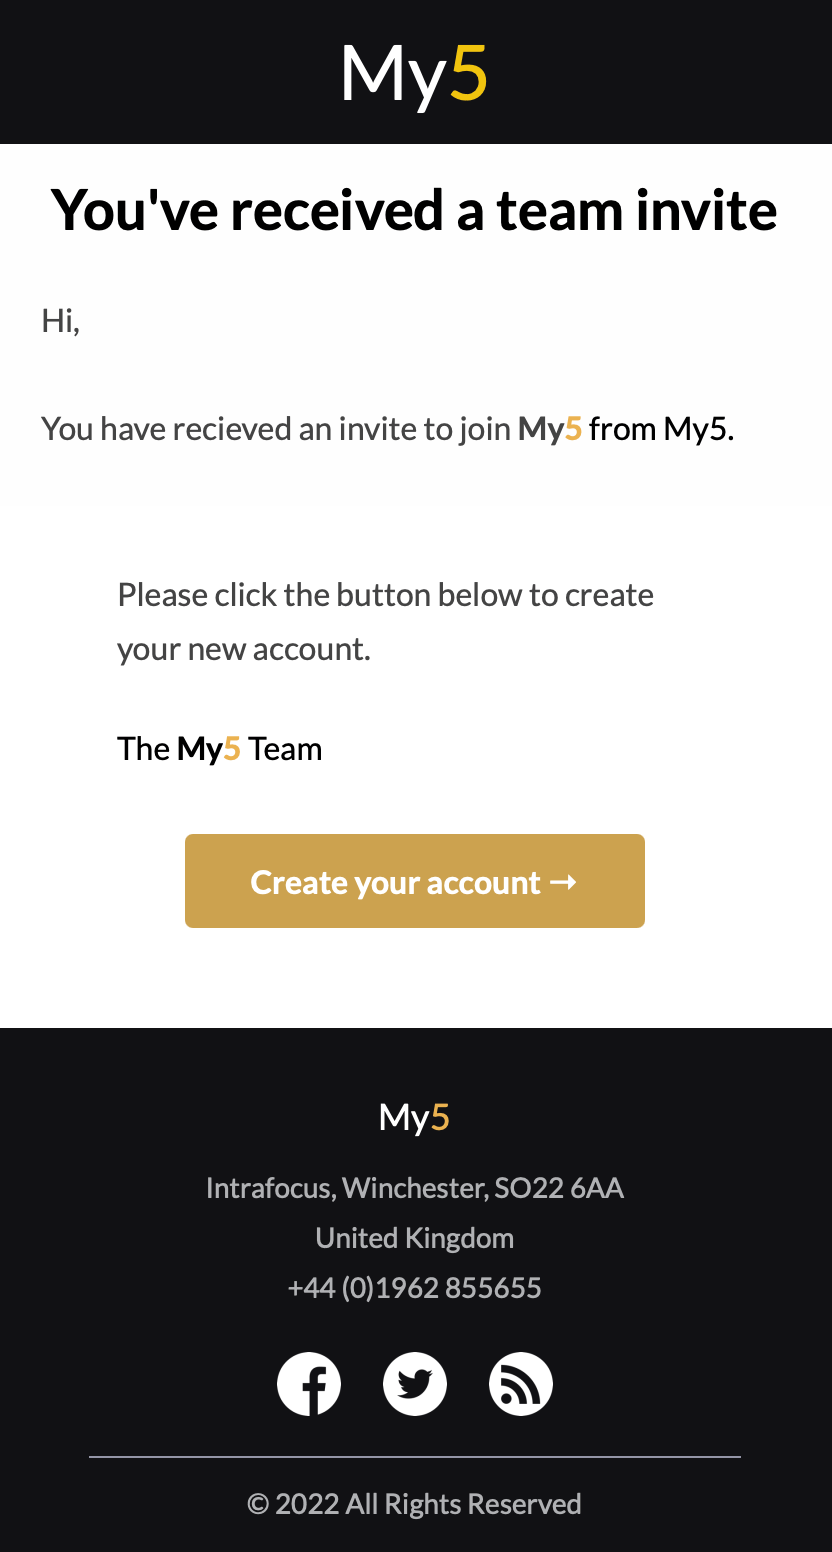 My5 - Add new user